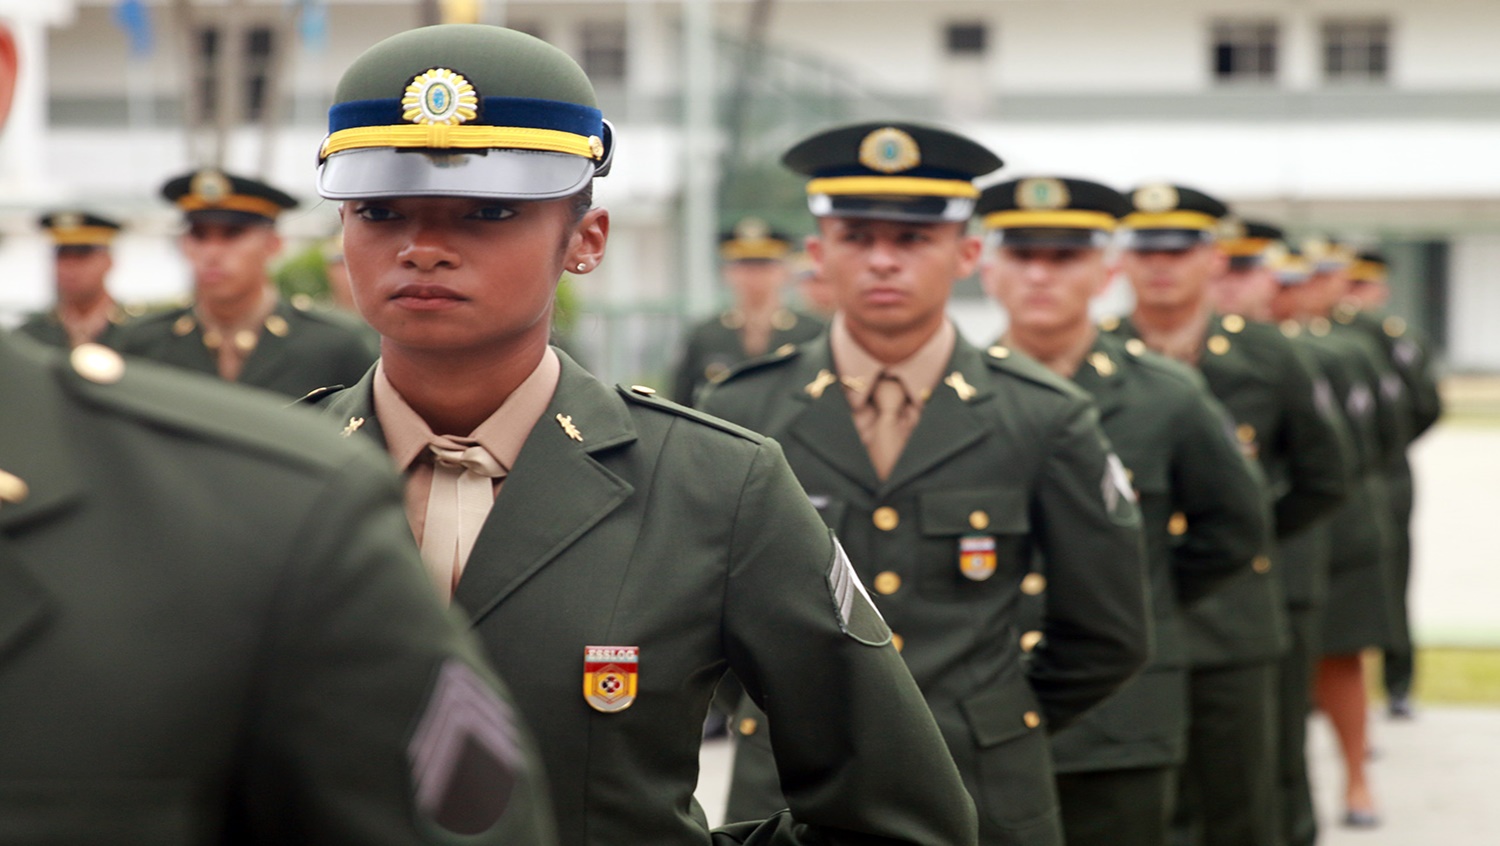 ABERTO: Exército divulga edital de concurso público com 1100 vagas para sargento